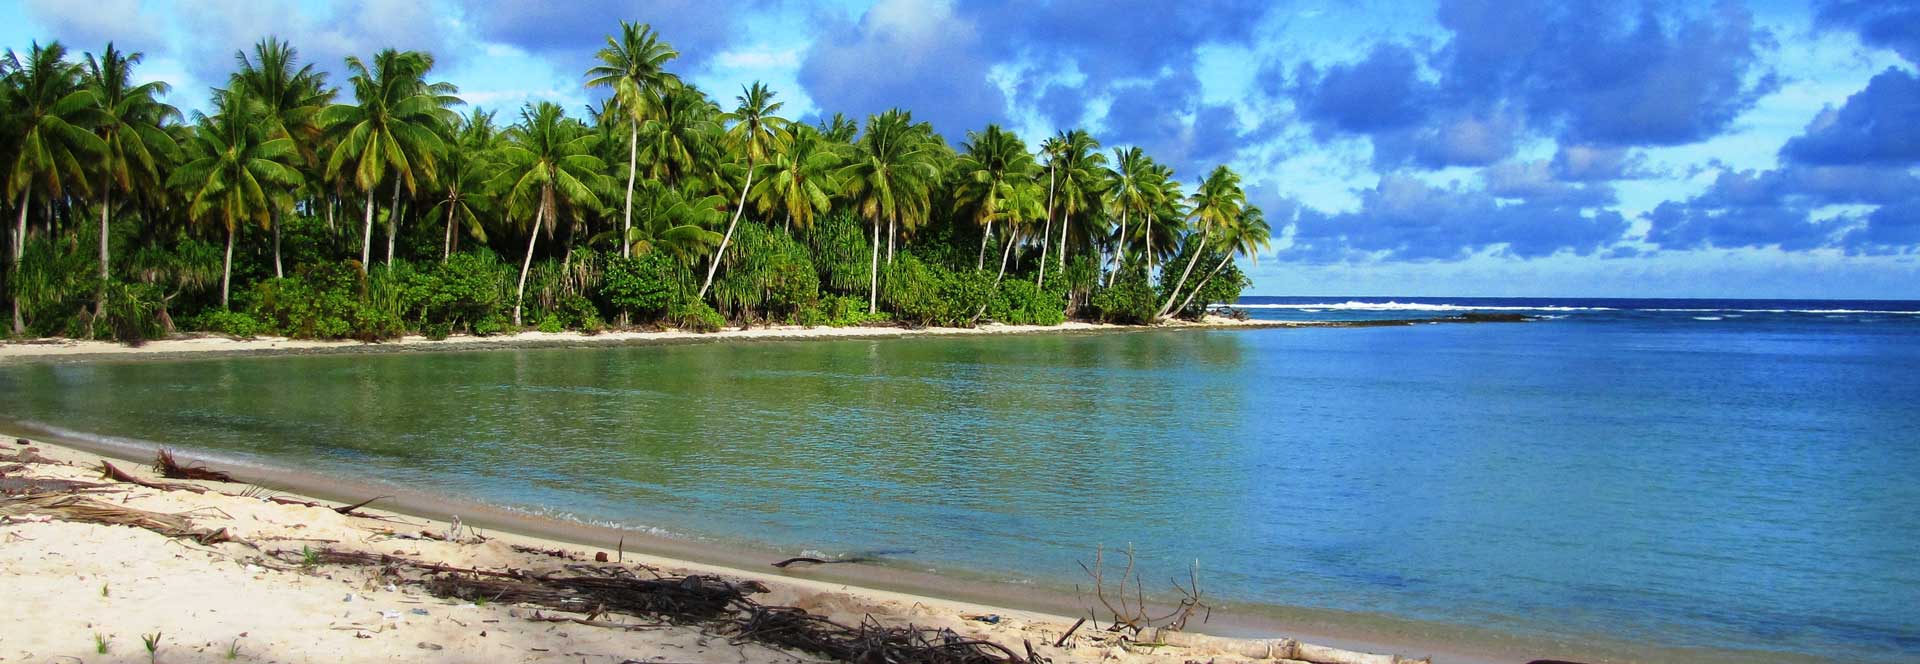 استكشاف جمال كيريباتي: رحلة عبر جزر المحيط الهادئ